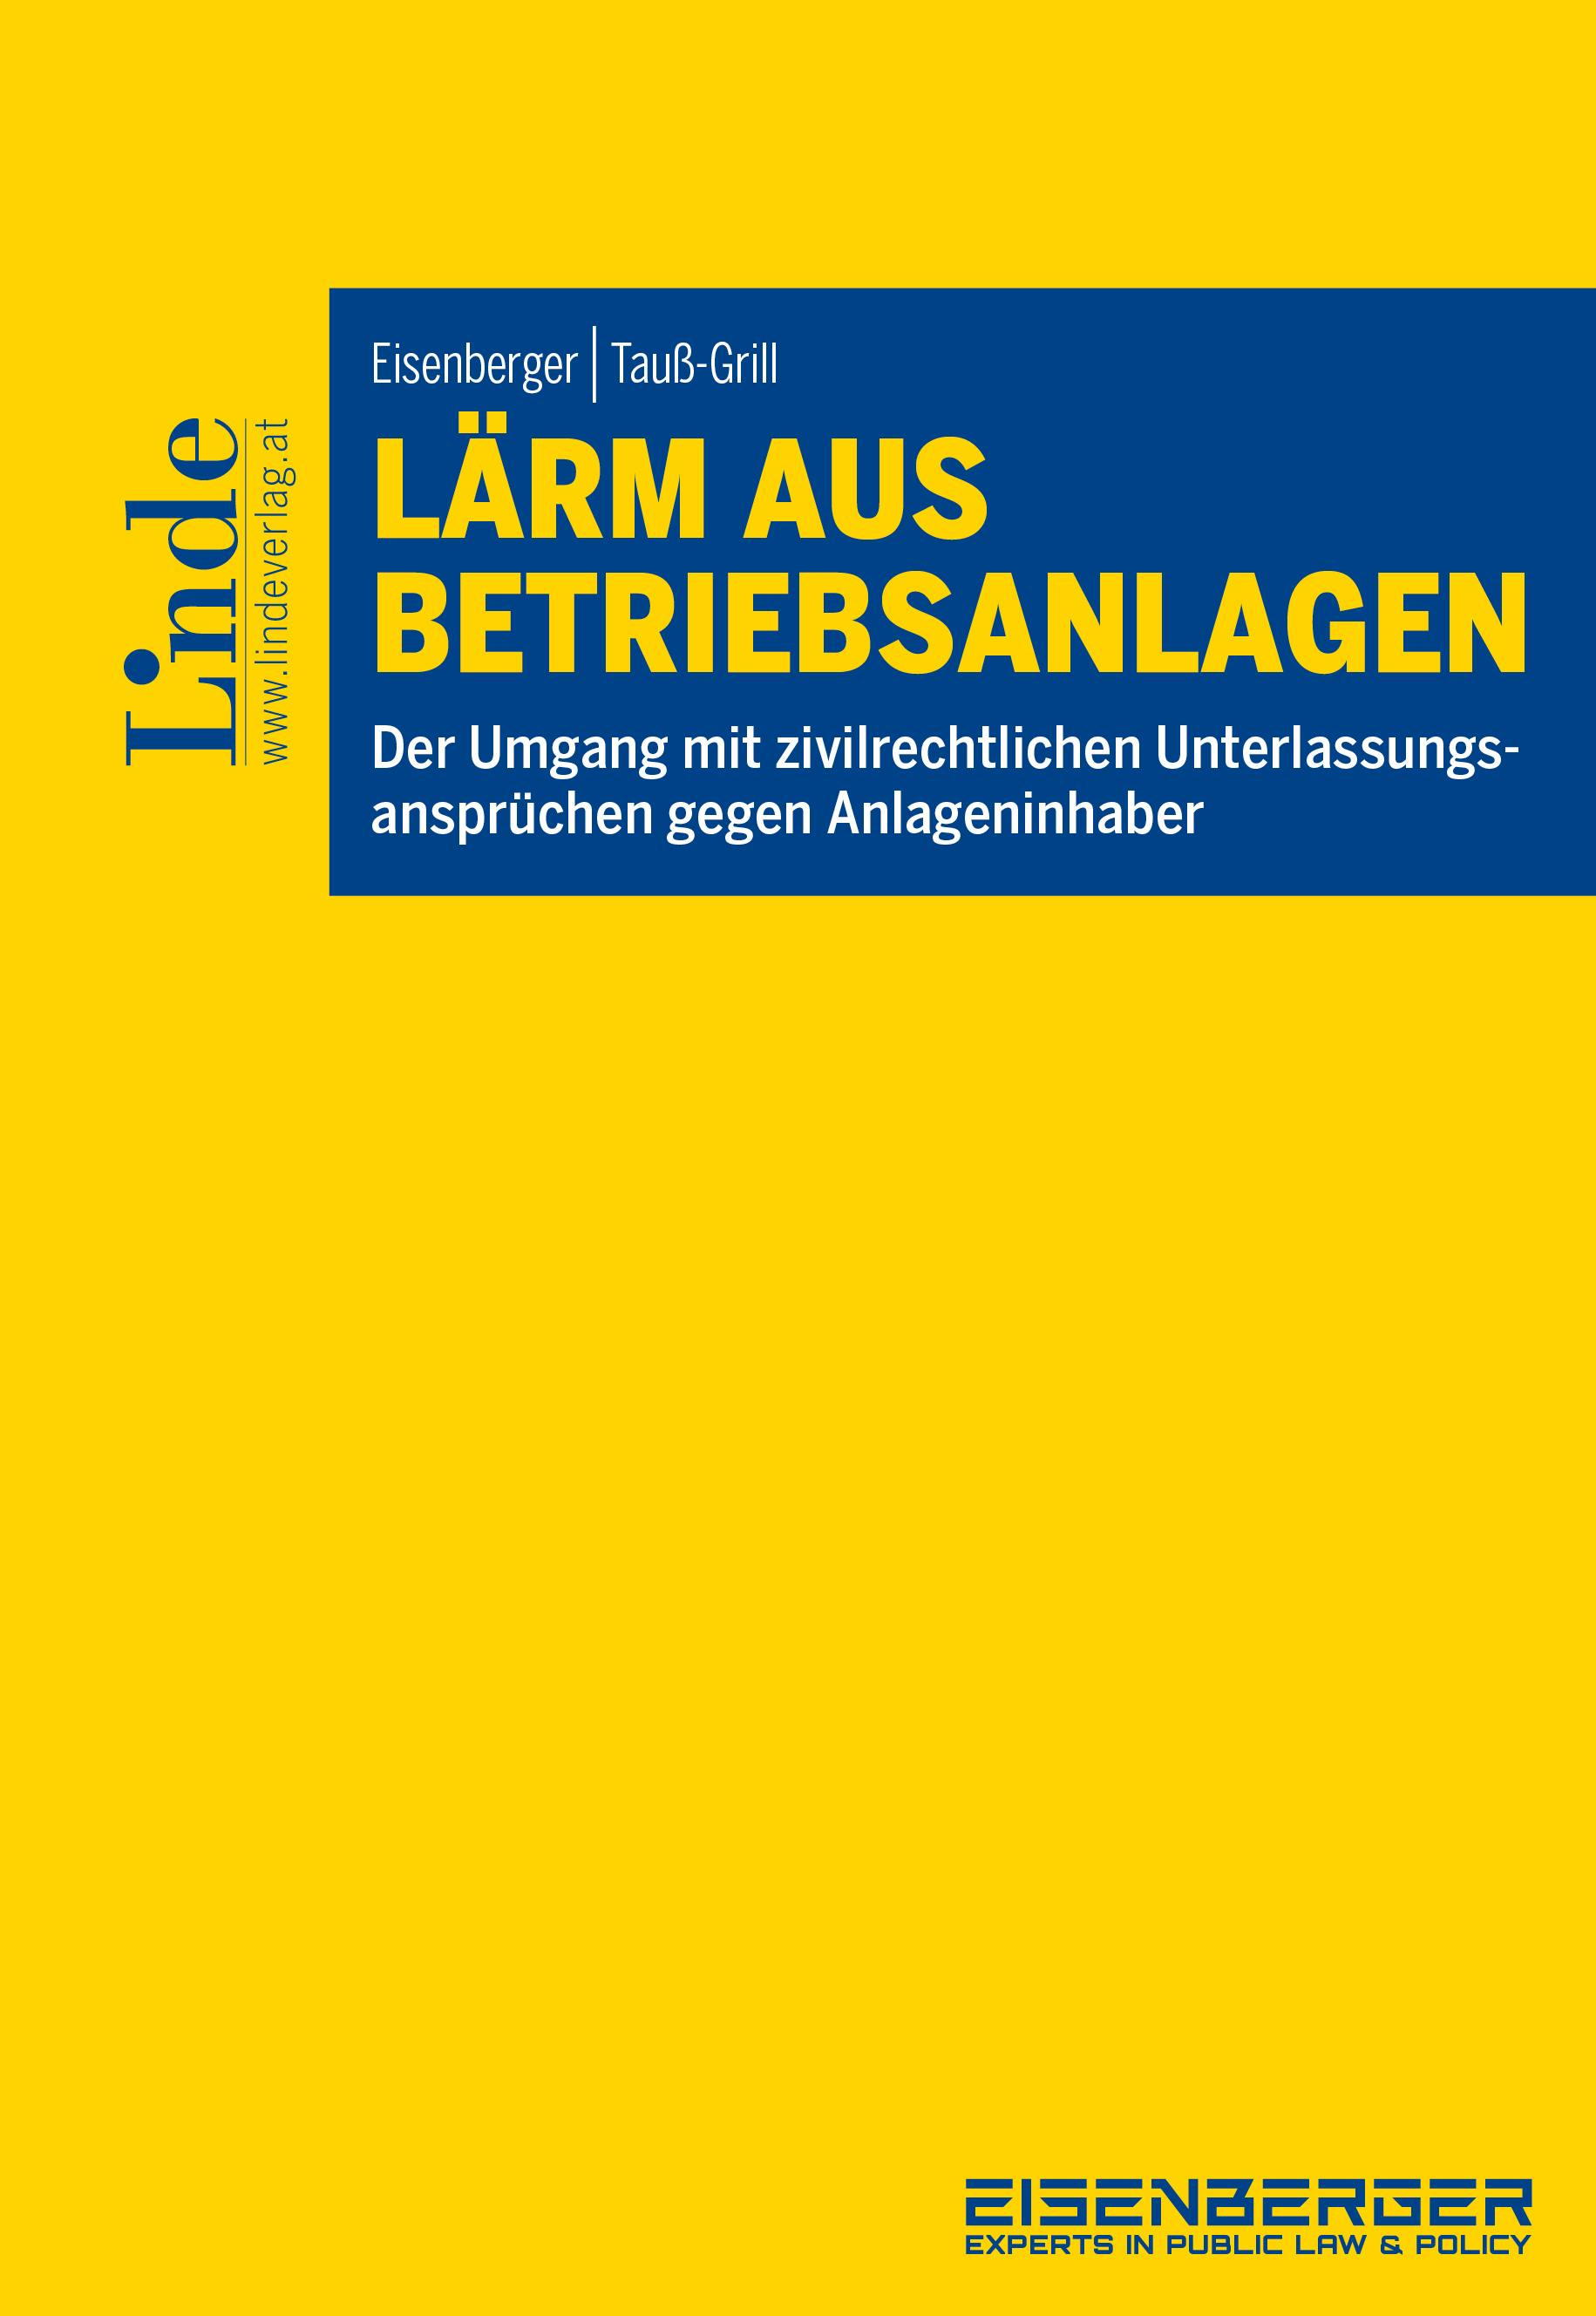 Eisenberger | Tauß-Grill
Lärm aus Betriebsanlagen
Der Umgang mit zivilrechtlichen Unterlassungsansprüchen gegen Anlageninhaber